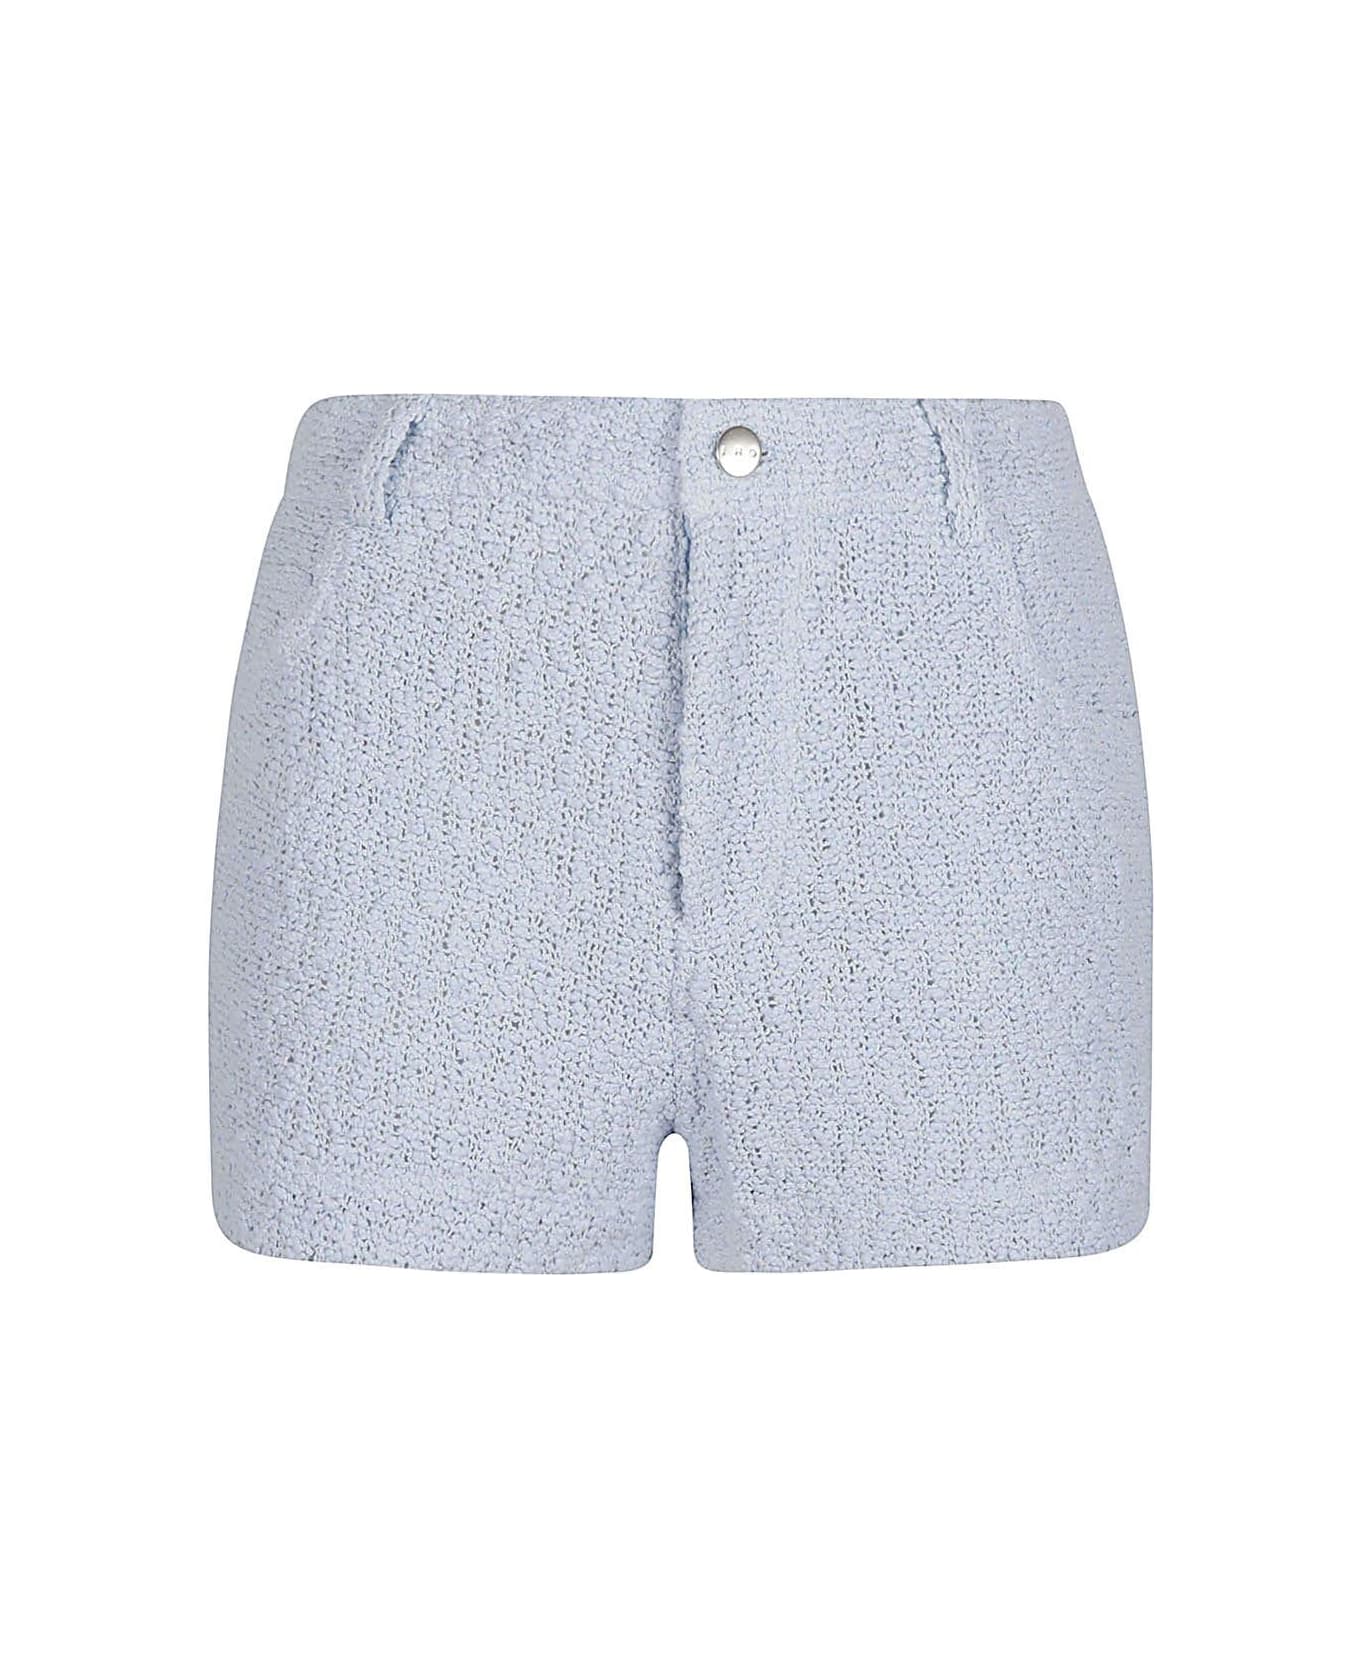 IRO Thigh-high Shorts - Clear Blue